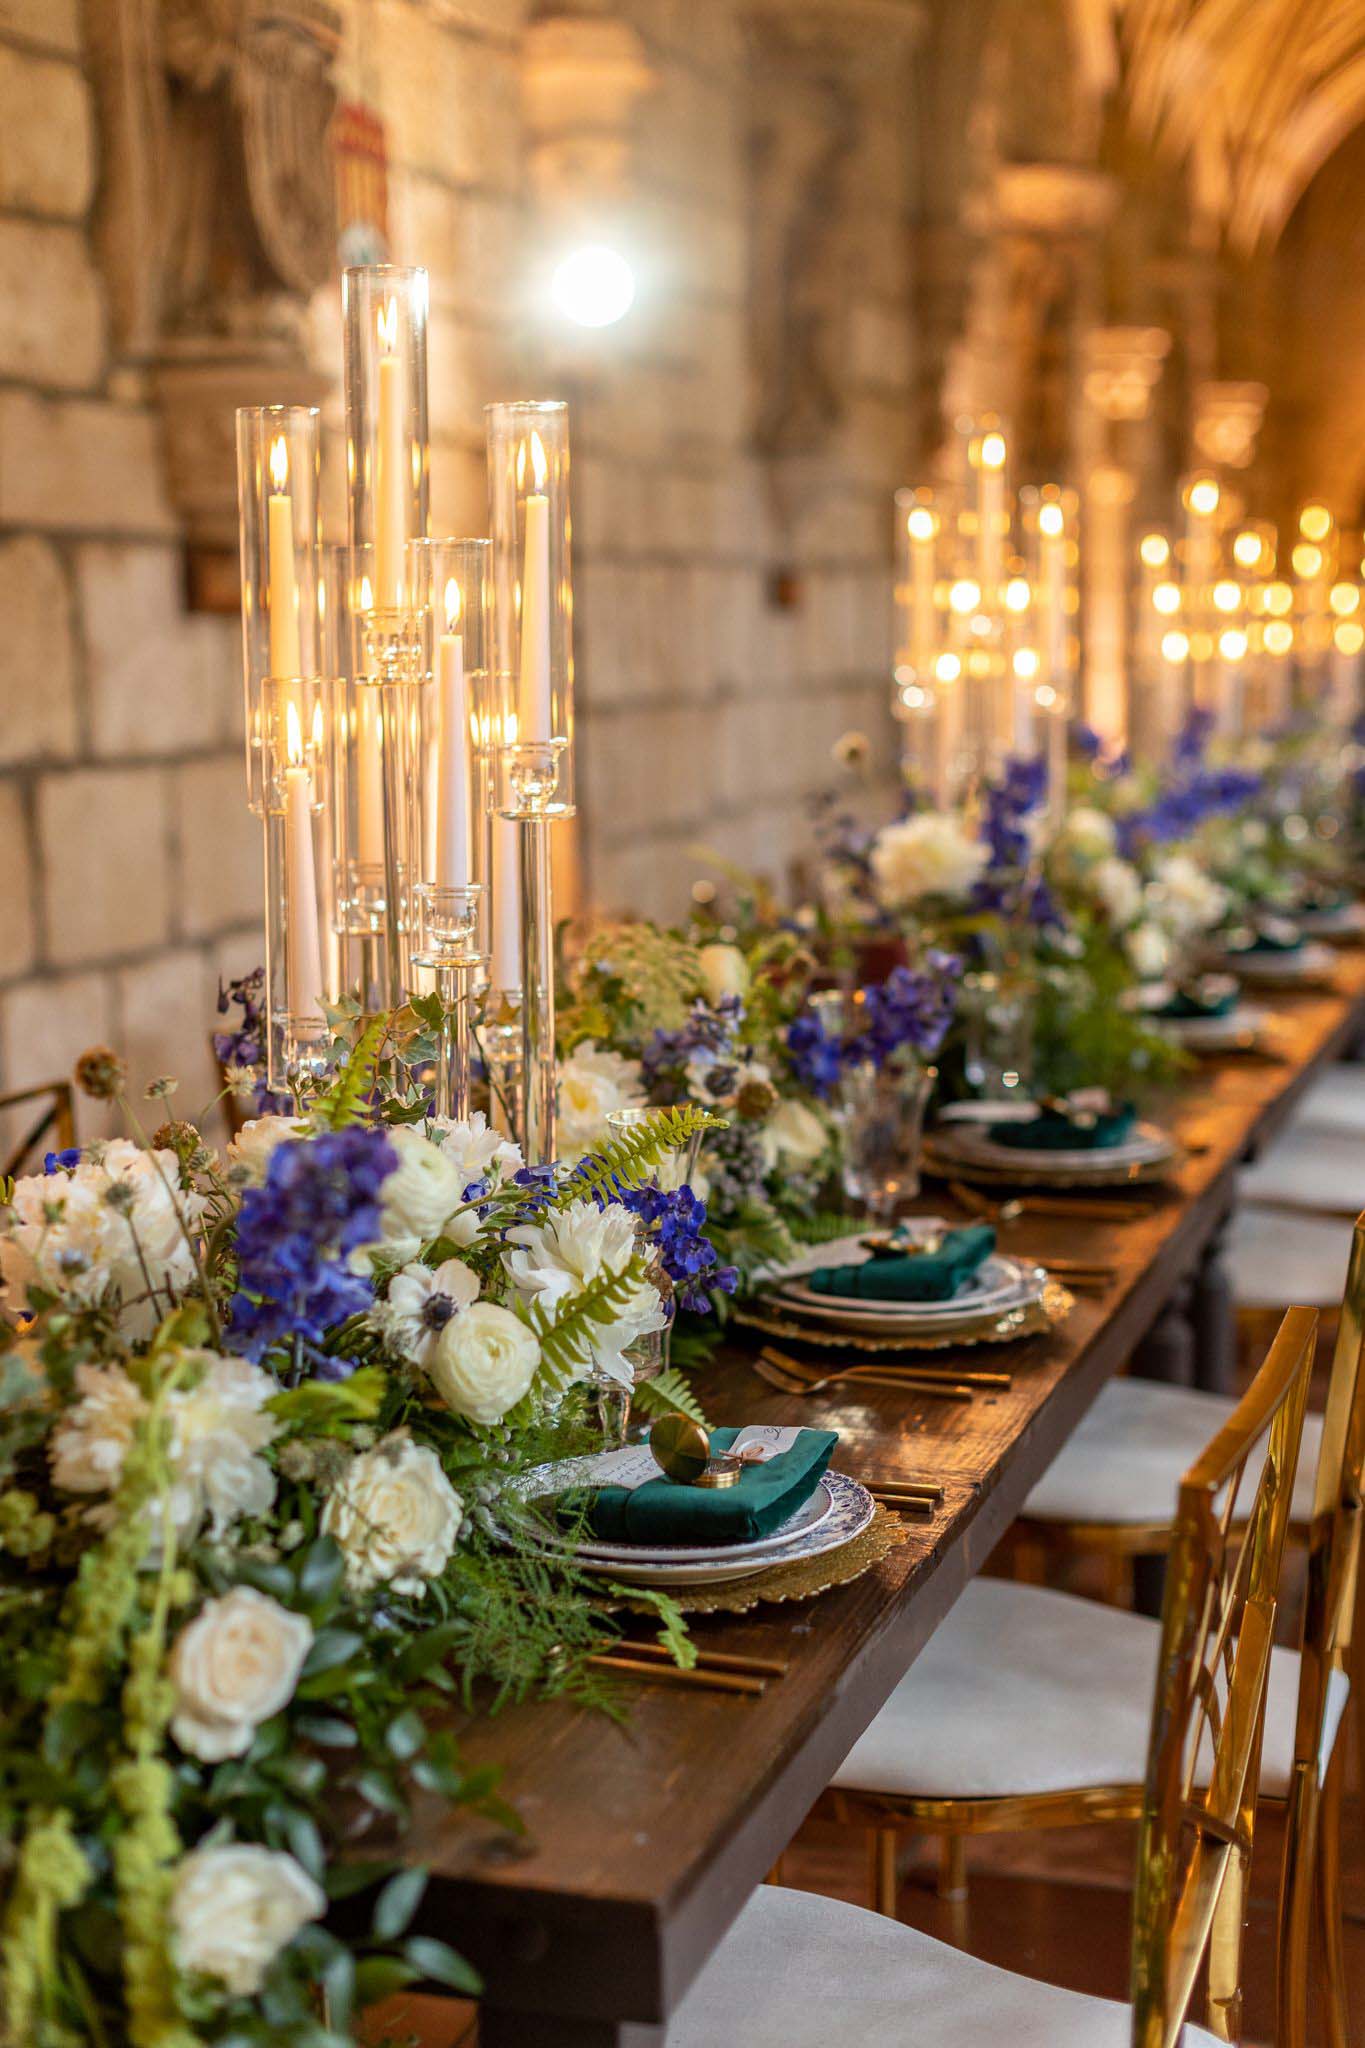 стол для свадебного приема с высокими светильниками, белыми и фиолетовыми цветами, зелеными салфетками и зеленью